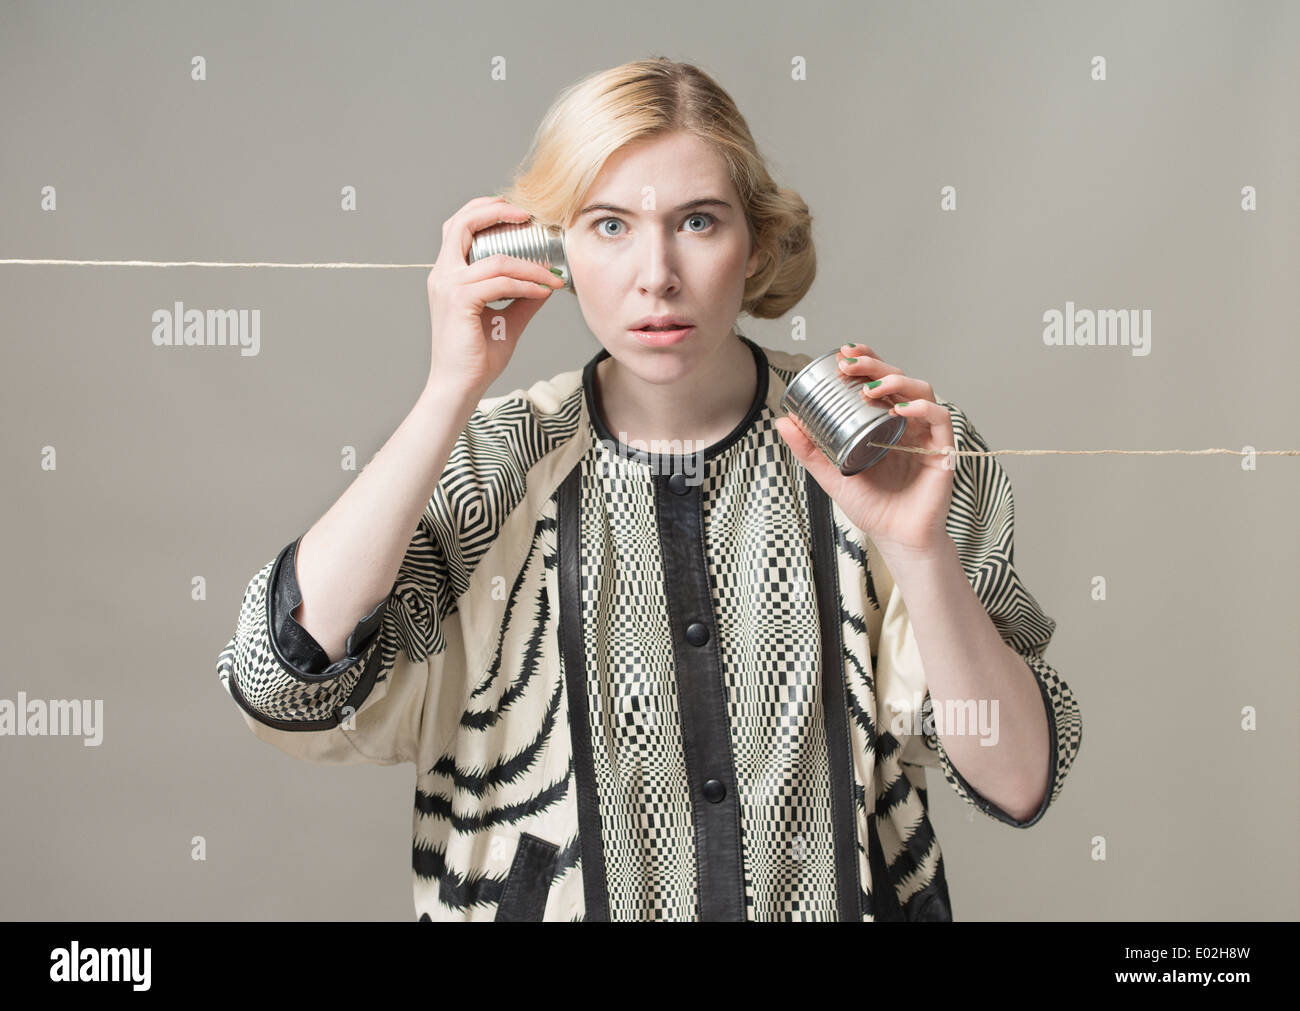 Donna bionda usando stagno possono telefonare a. Immagine concettuale di collegamento e comunicazione. Foto Stock